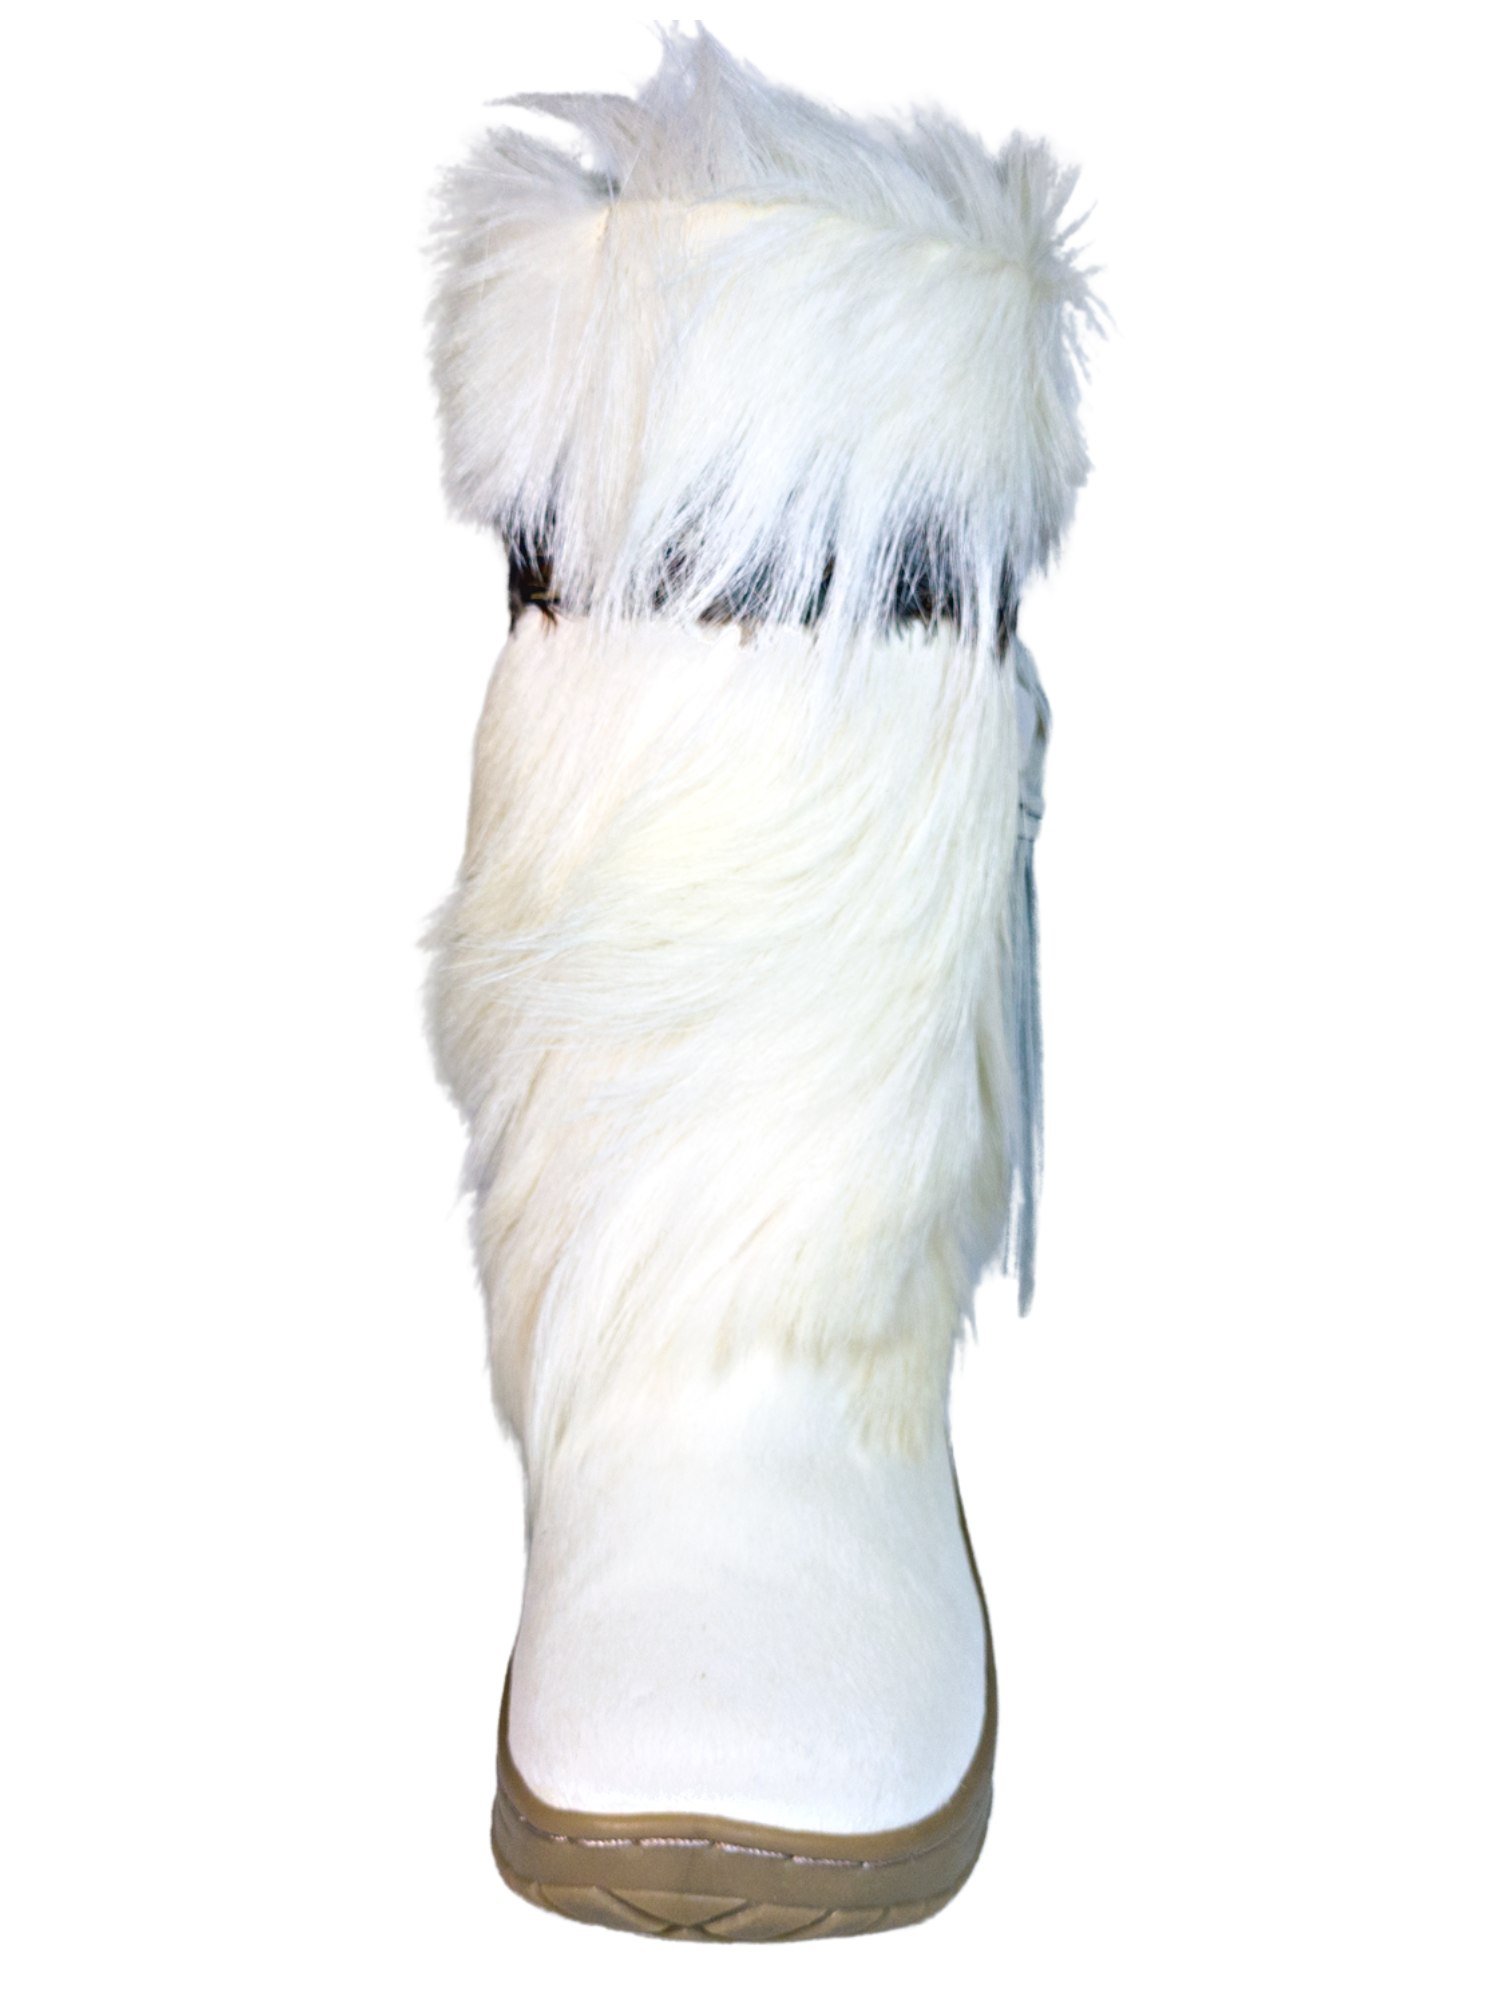 Botas de Invierno para la Nieve de Piel Genuina con Pelo/Pelo de Cabra para Mujer 'Bearpaw' - ID: 7108 Winter Boots Bearpaw 